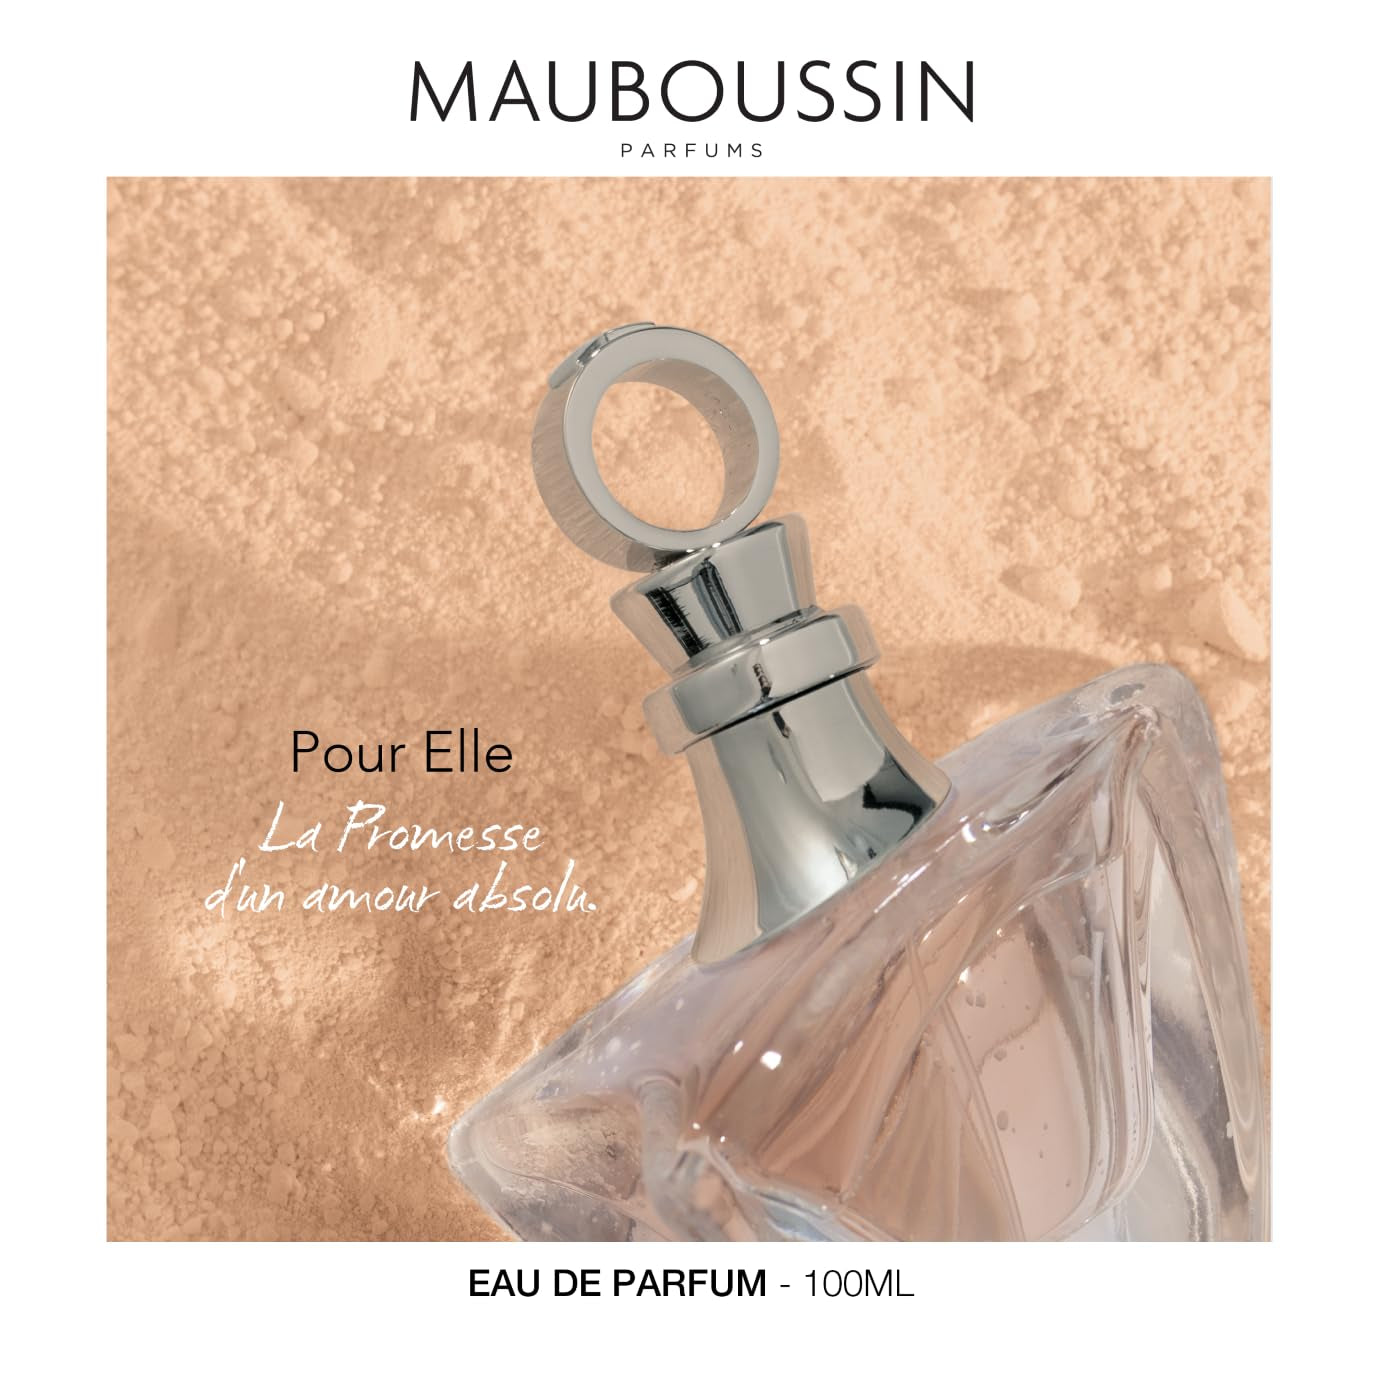 Mauboussin - Pour Elle 100ml (3.3 Fl Oz) - Eau de Parfum for Women - Floral & Fruity Scents